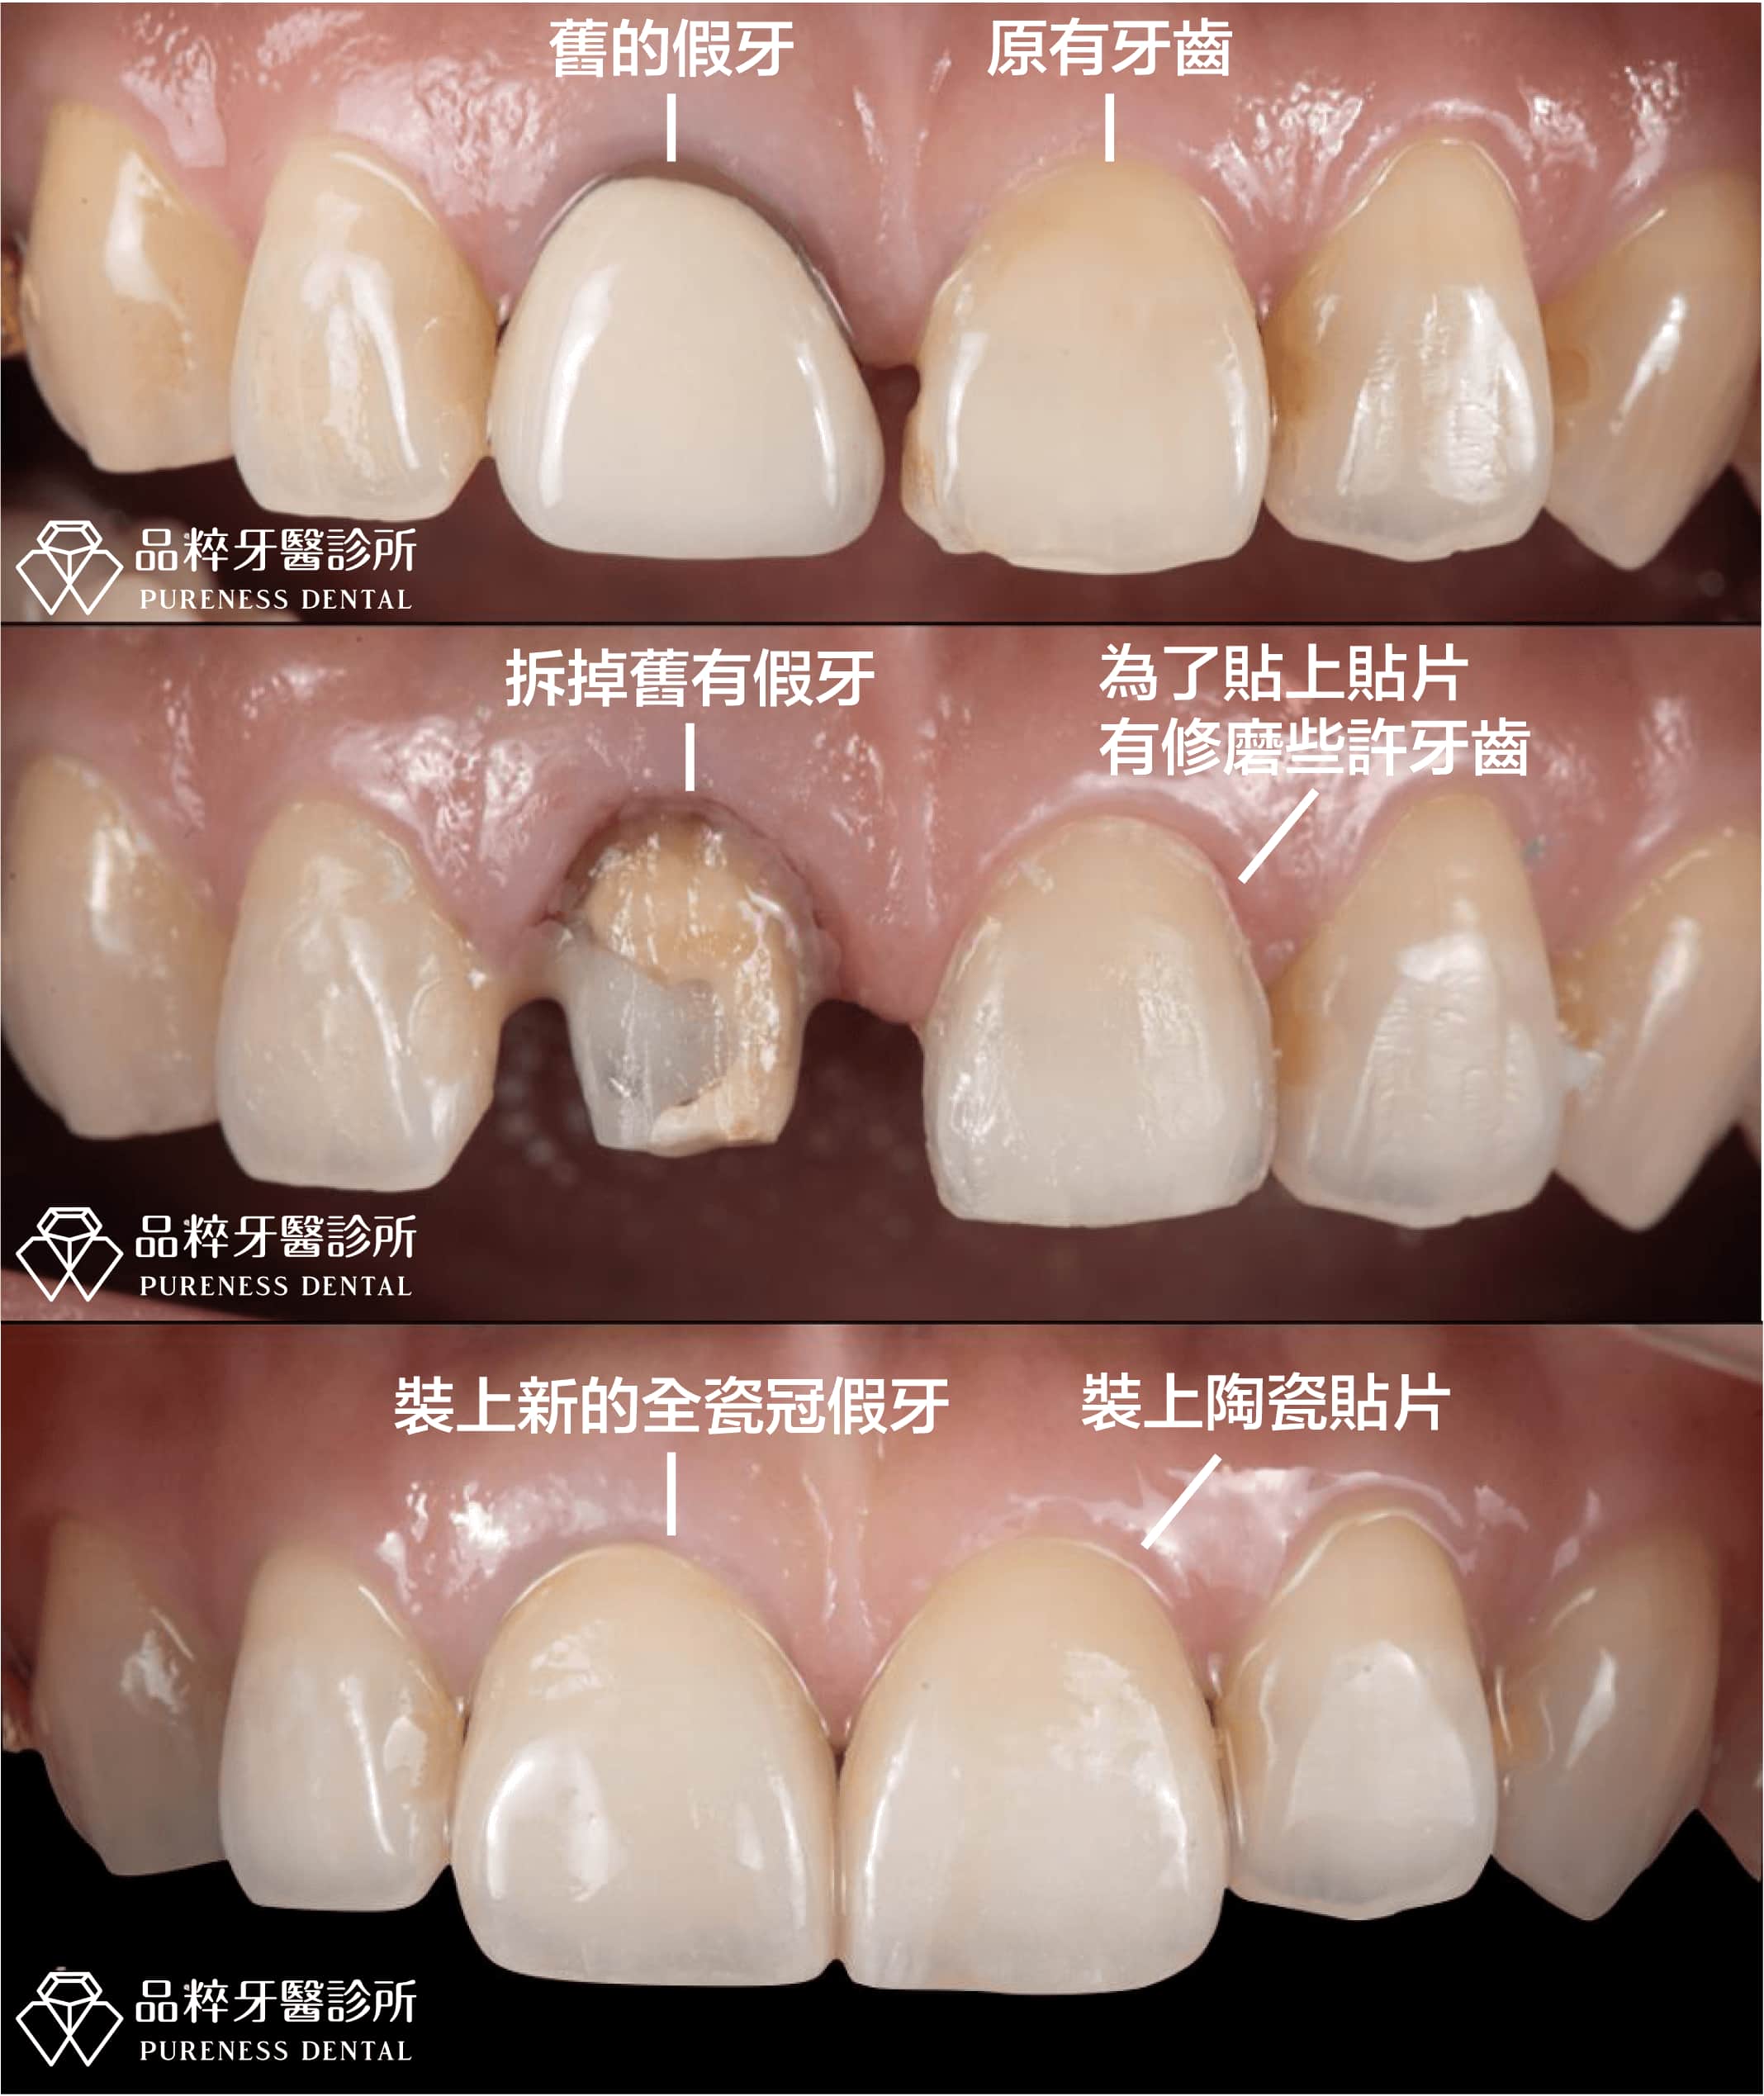 艾來牙醫: 從容的自信-全陶瓷牙冠修復外型